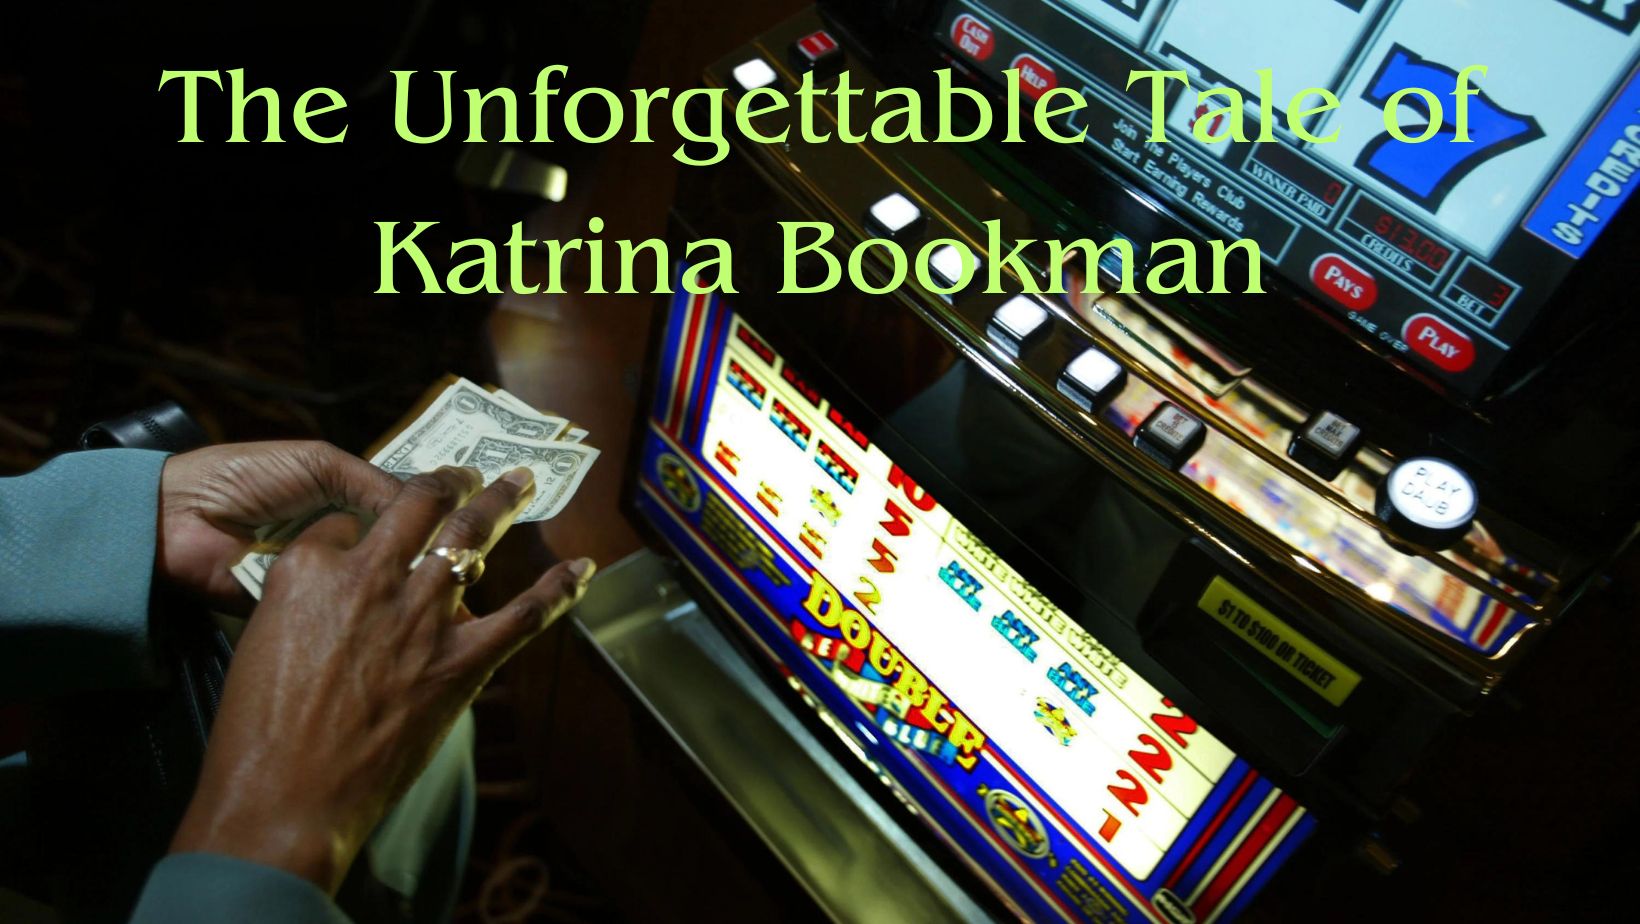 Katrina Bookman